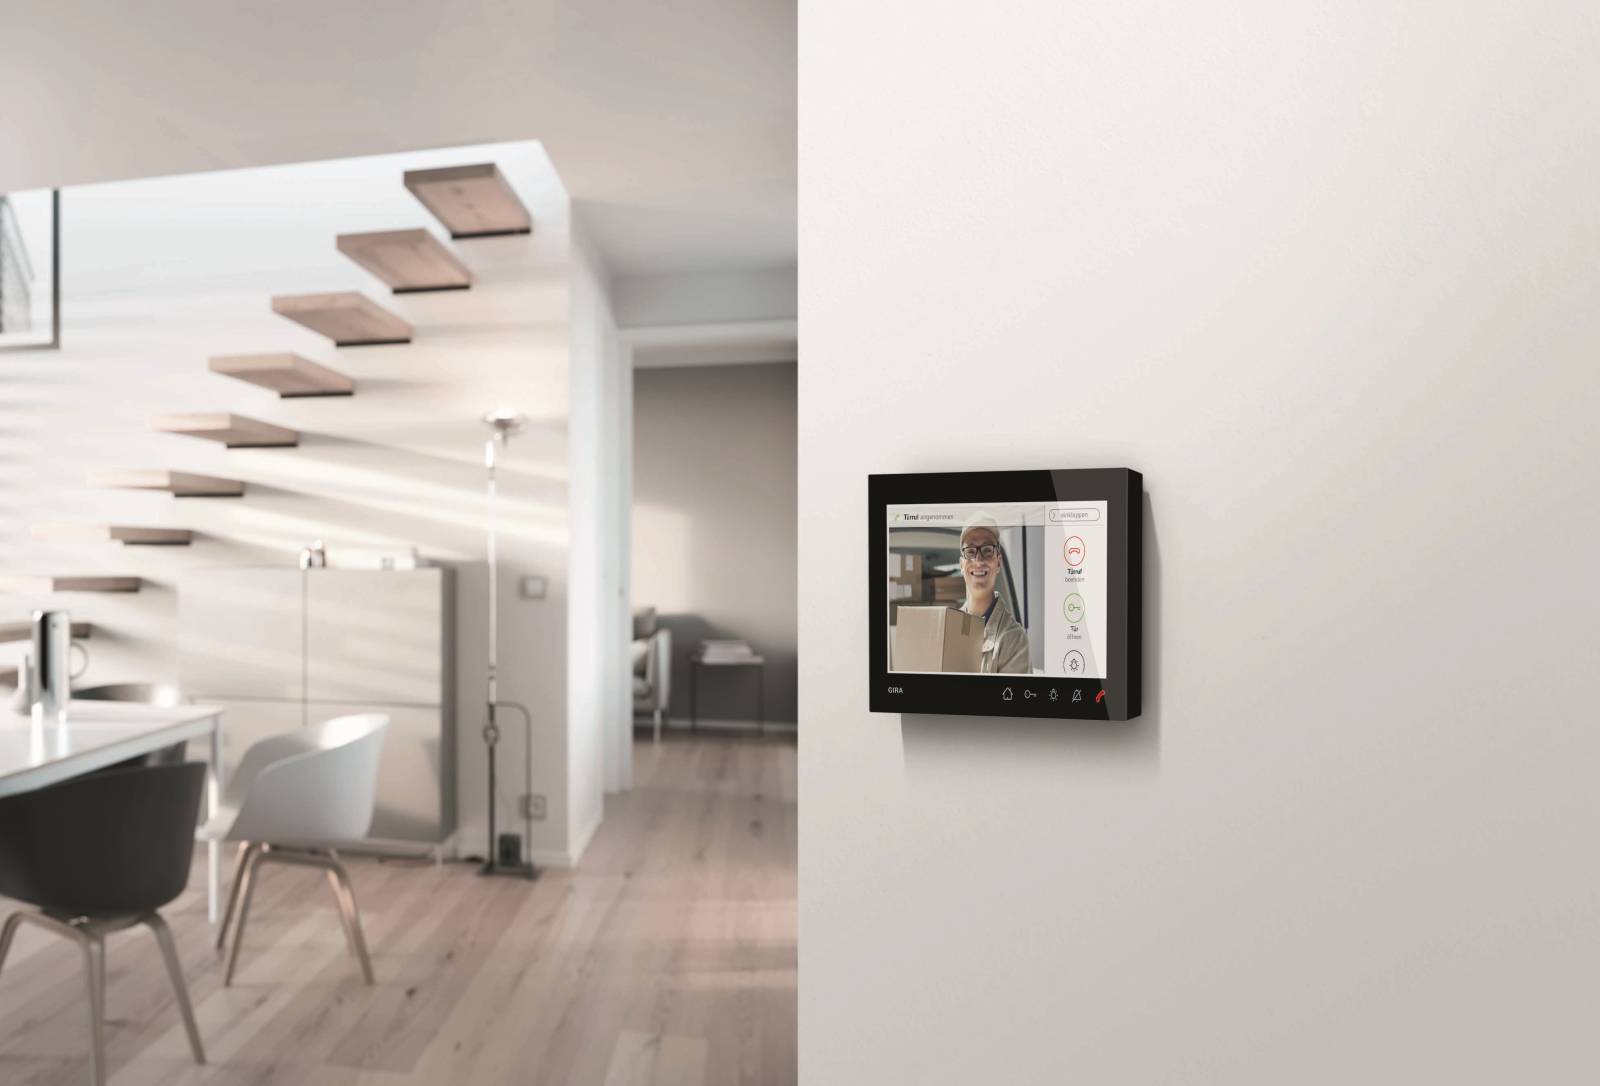 Die Gira Wohnungsstation Video AP 7 mit 7-Zoll Display zeigt hochauflösende Bilder und ermöglicht die direkte Kommunikation. ✓In 2 Farbvarianten erhältlich